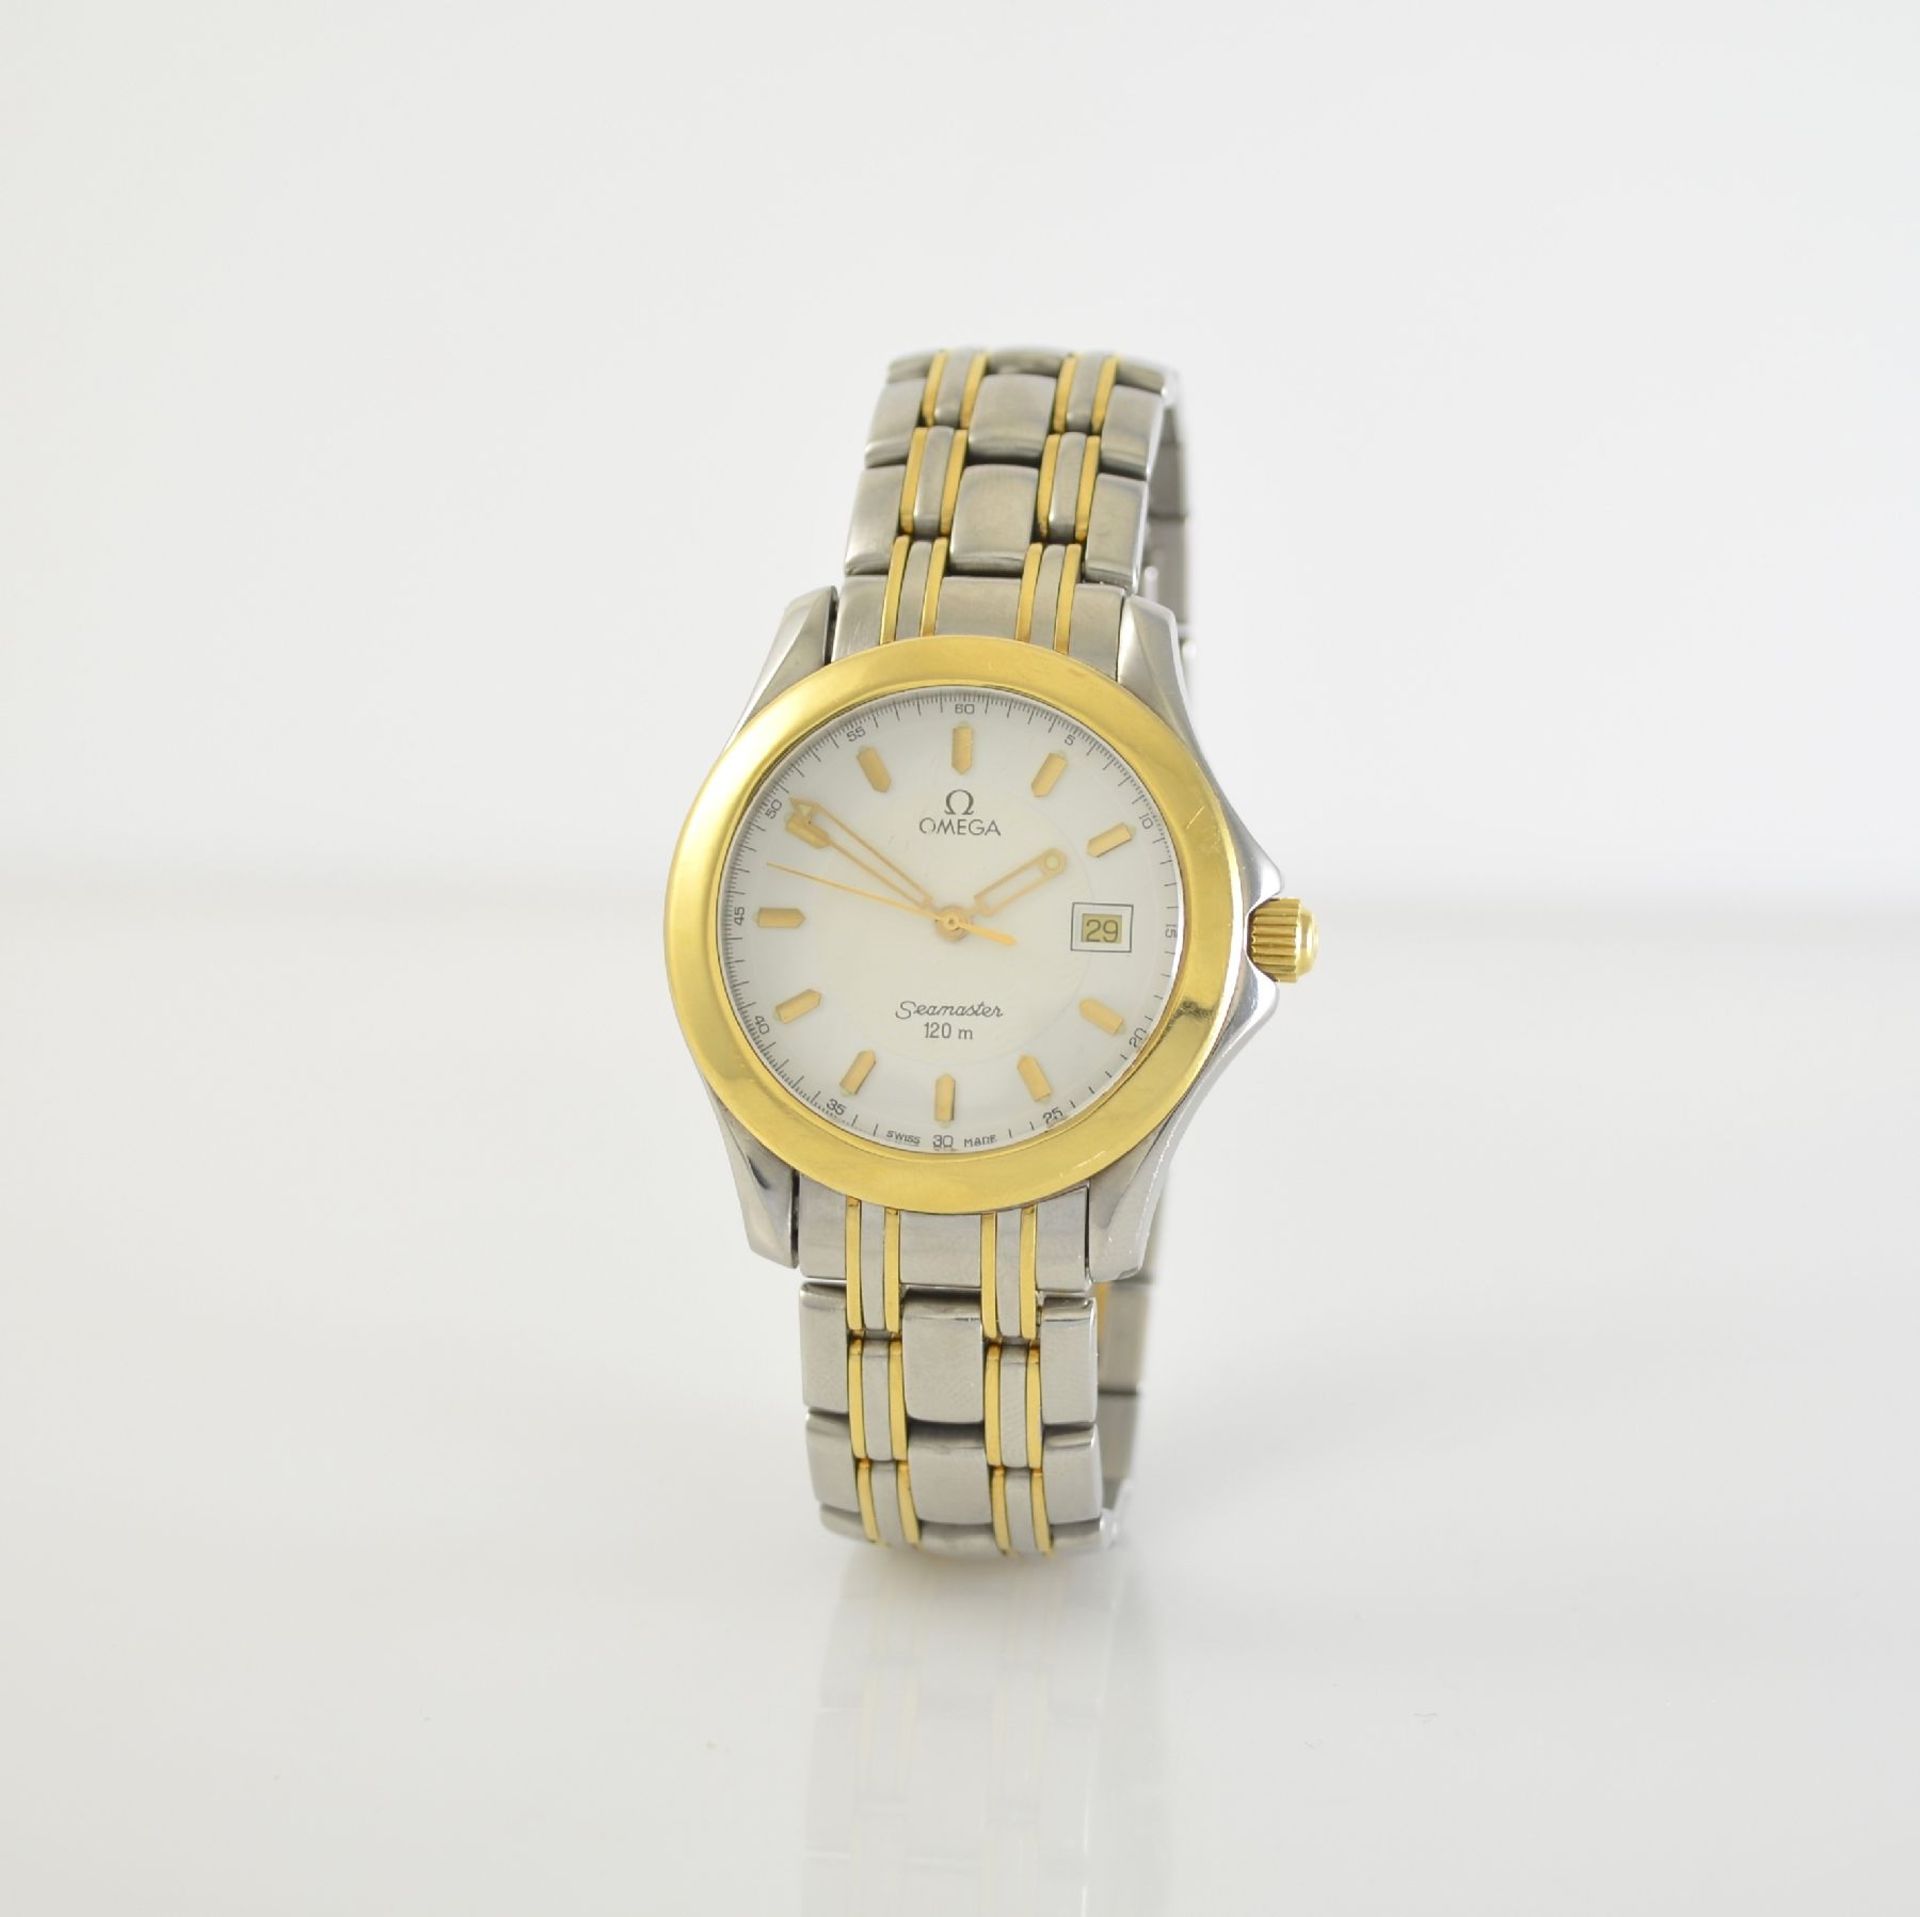 OMEGA gents wristwatch series Seamaster, Switzerland around 1996, 168.1501/196.1501, stainless - Bild 3 aus 6